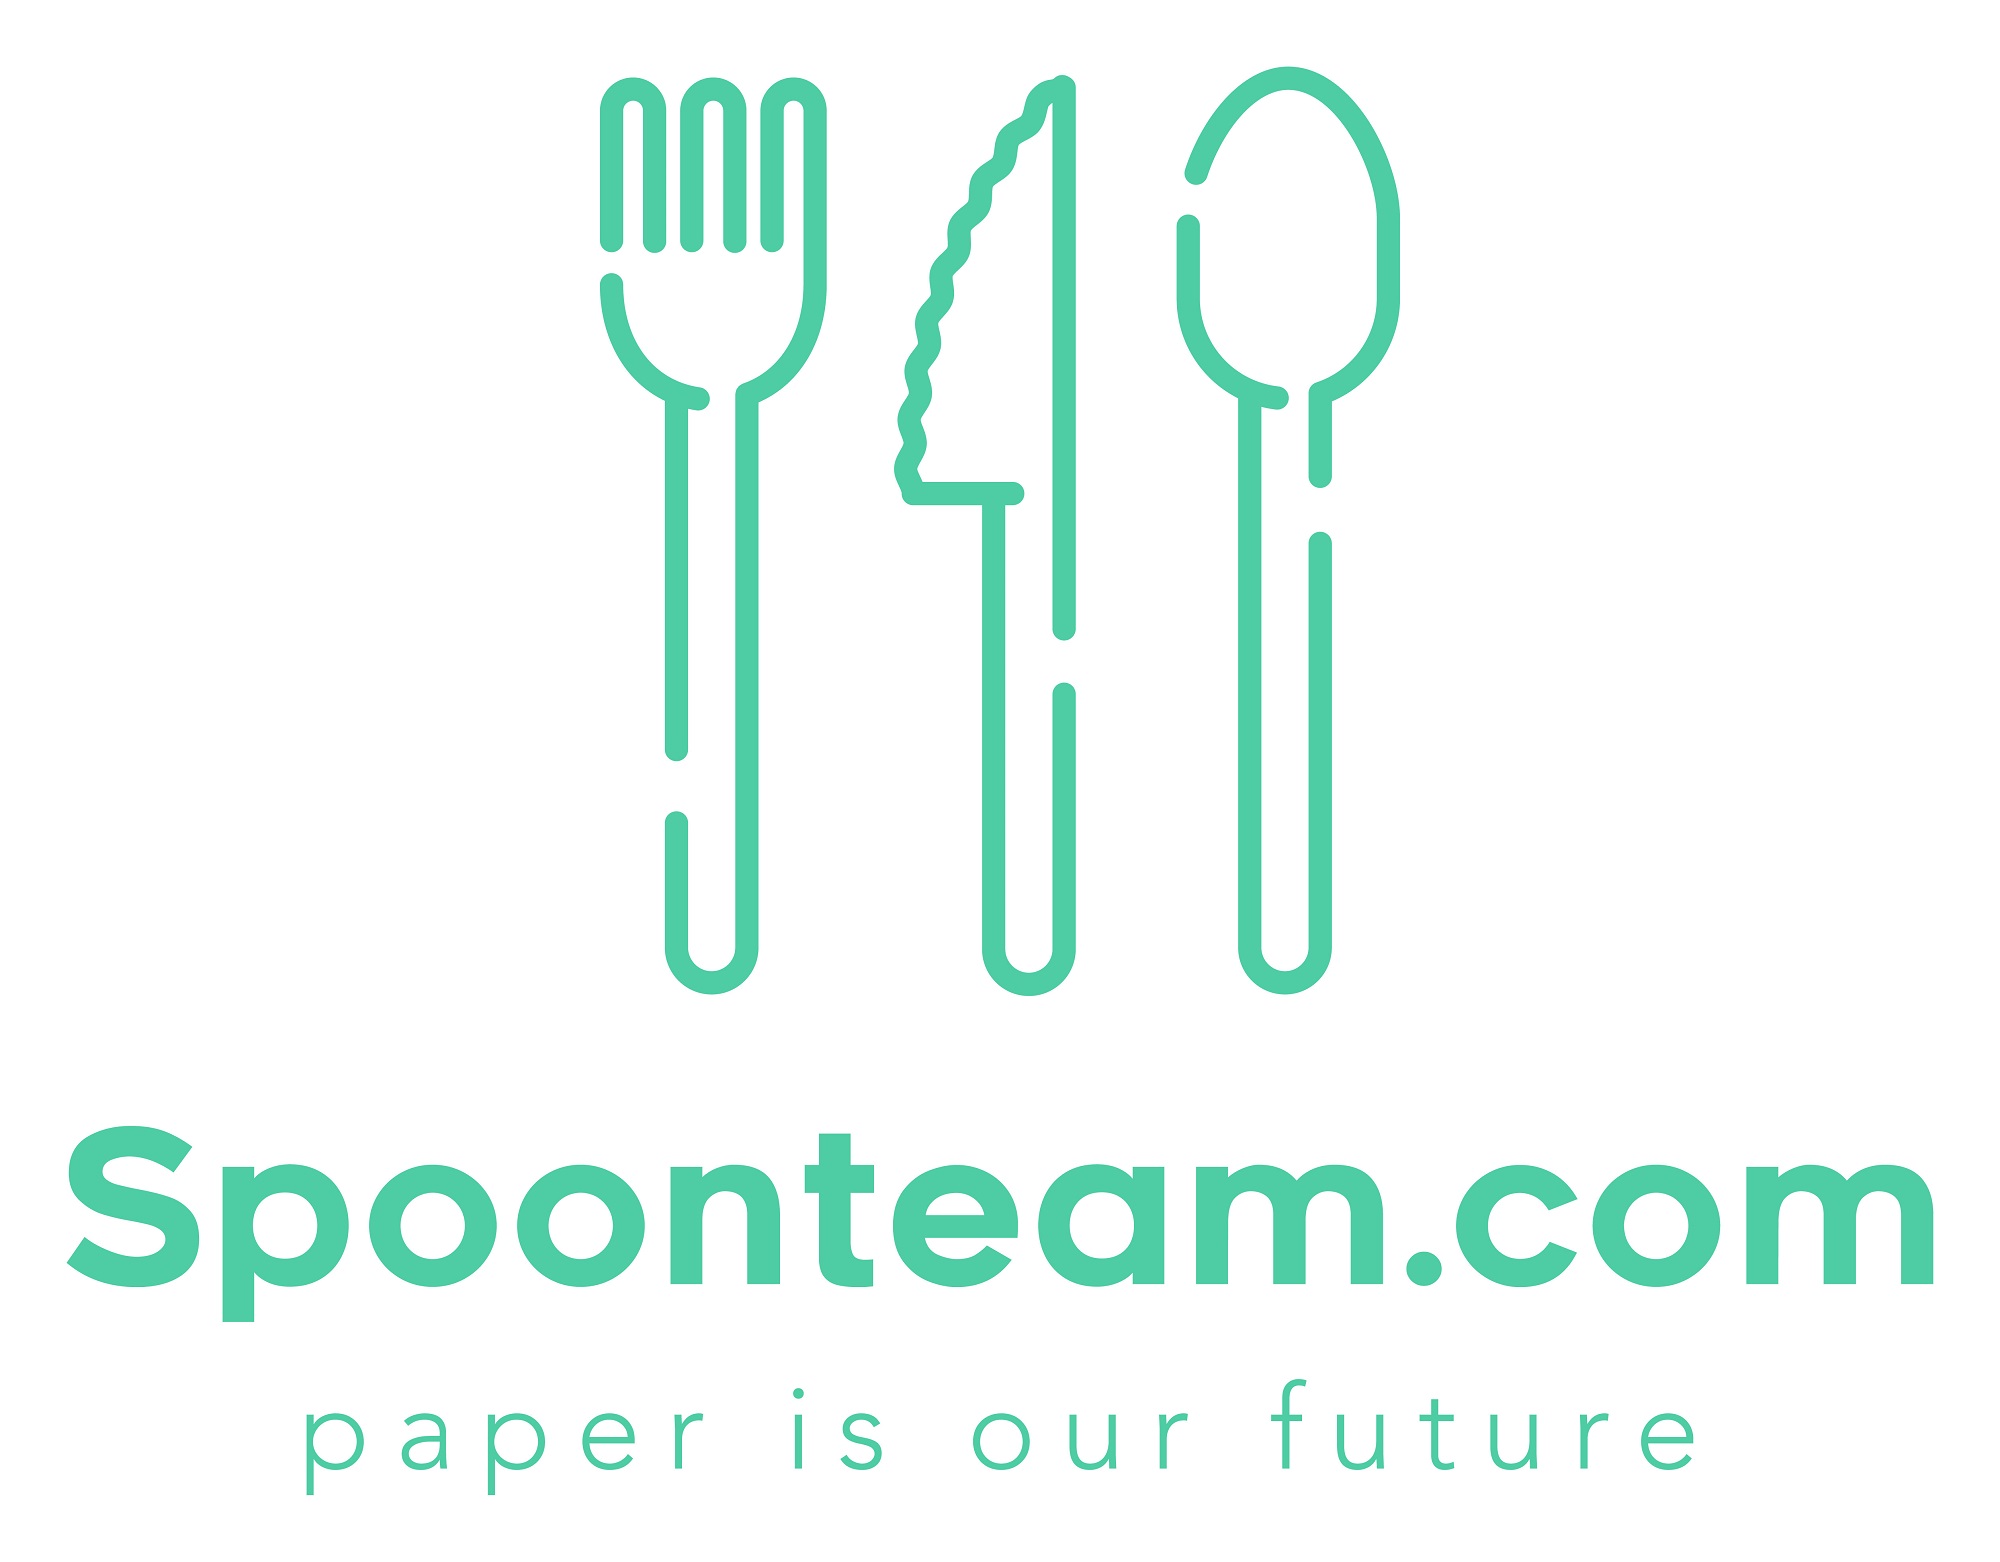 Spoonteam.com paper is our future